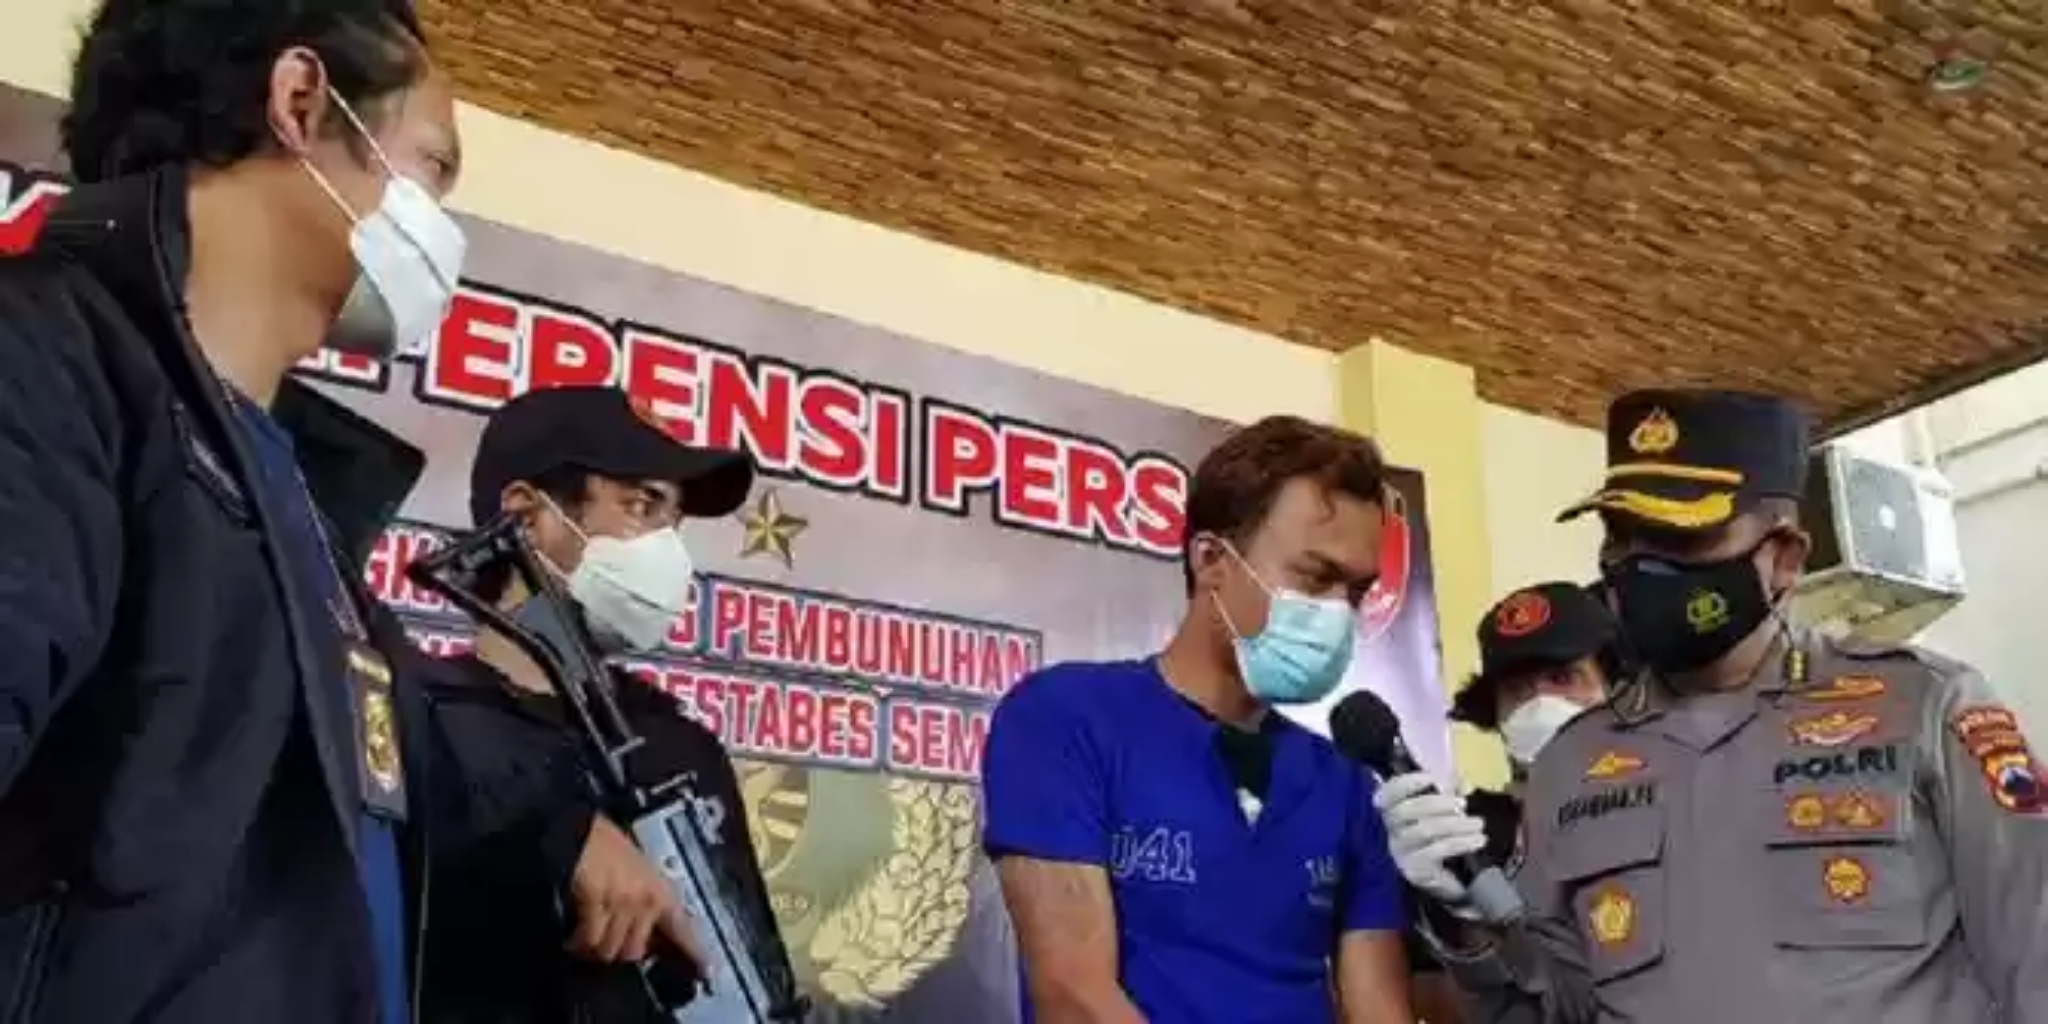 Pembunuh Wanita Dalam Lemari Hotel Semarang Ditangkap, Motif Kesal Korban Pencemburu